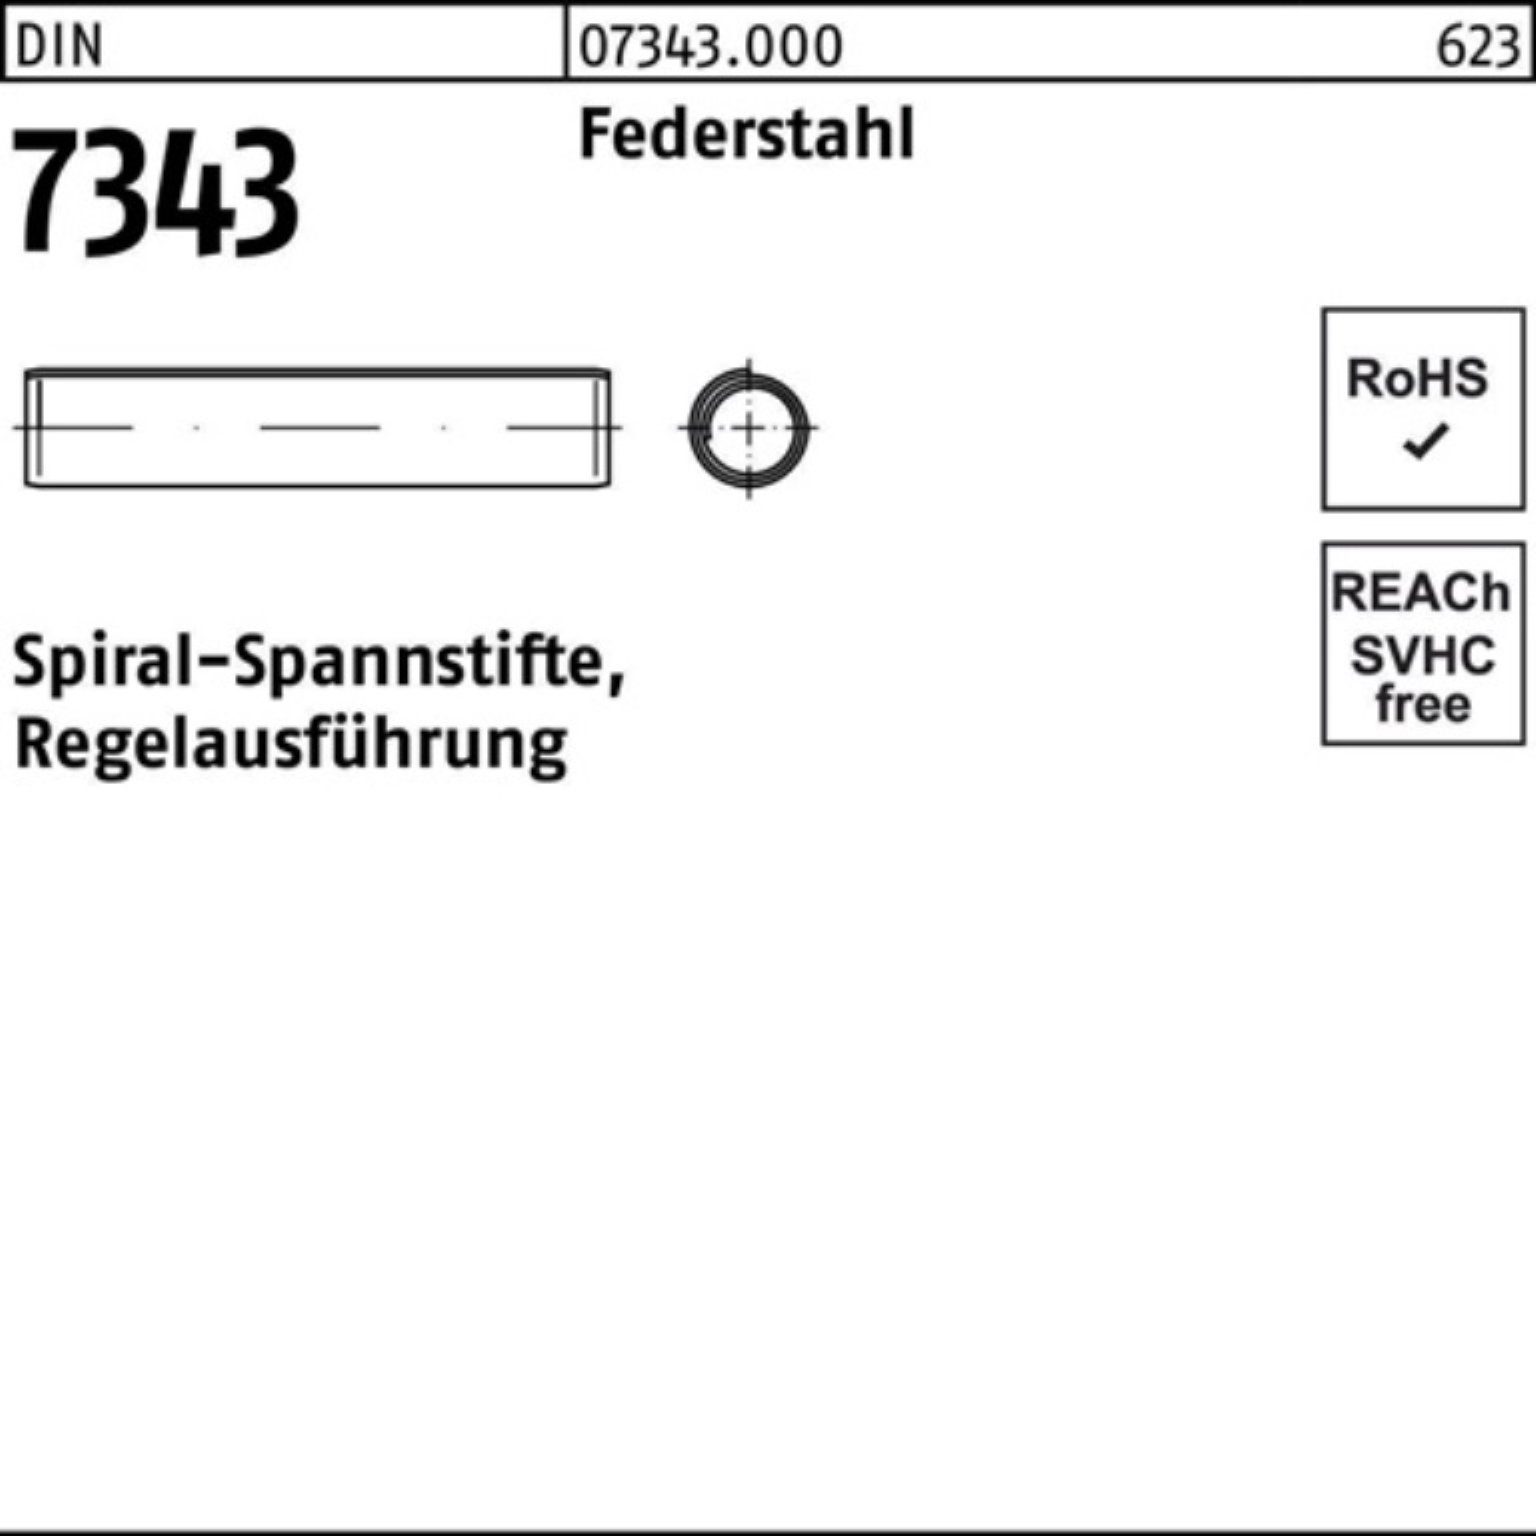 Reyher Spannstift 250er Pack Spiralspannstift 7343/ISO DIN 8750 Regela Federstahl 50 10x